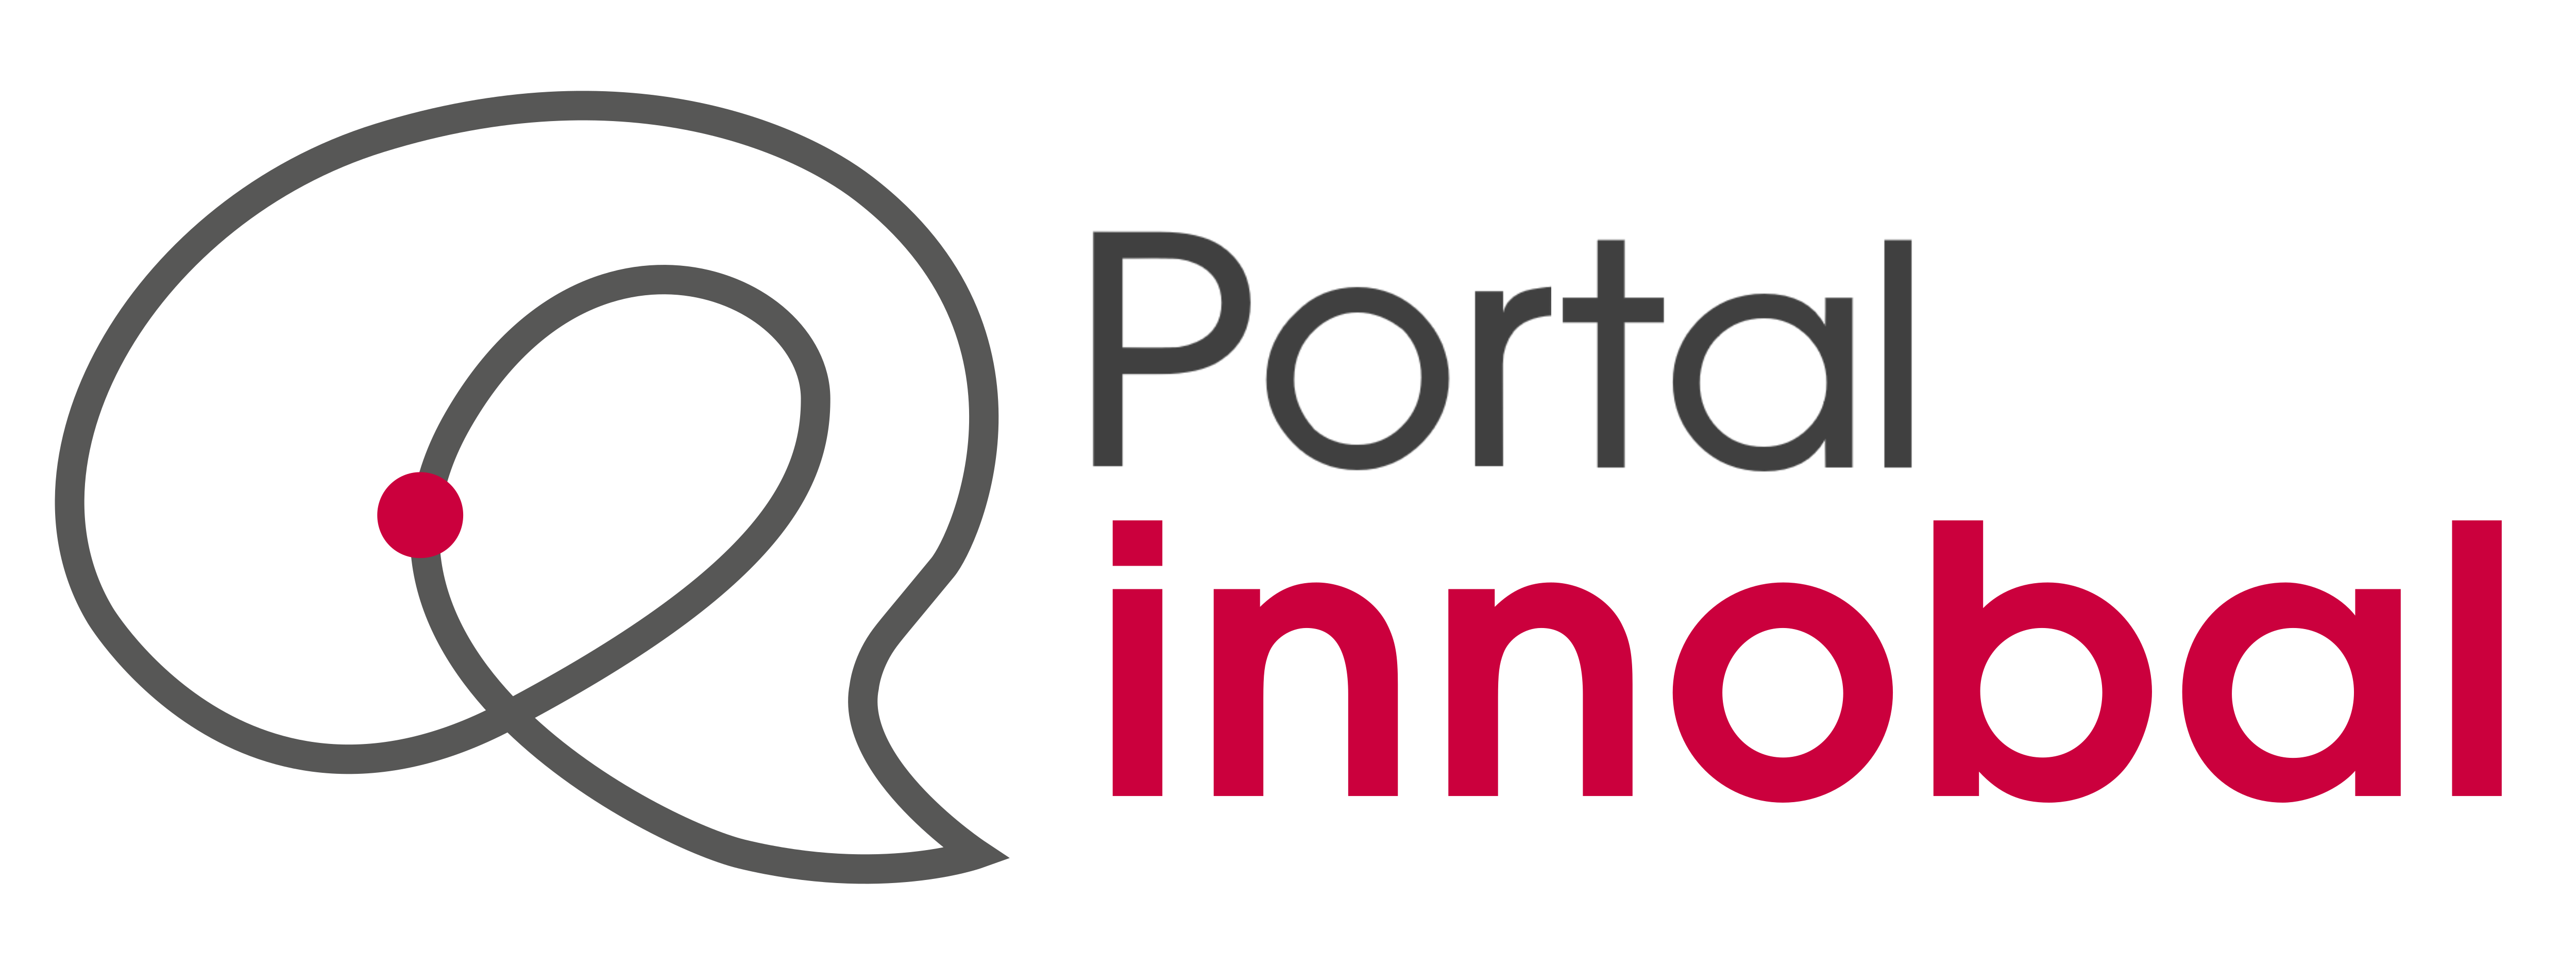 0. logo portal 02ca